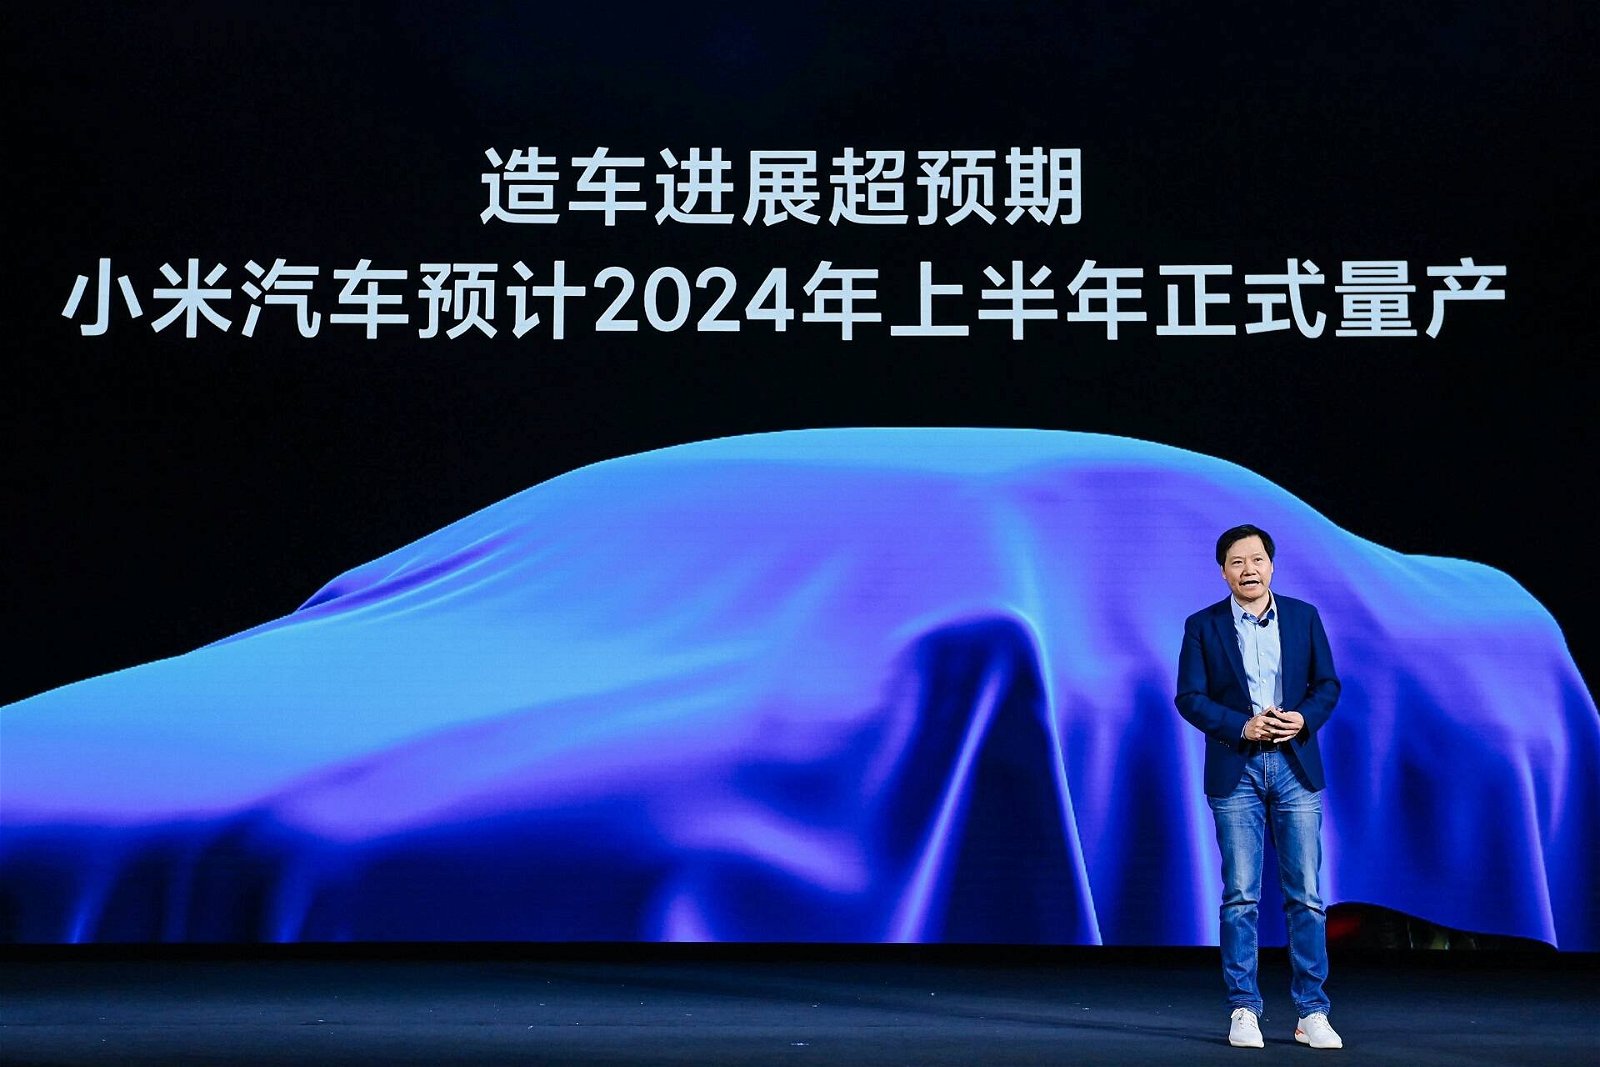 Immagine di Xiaomi, il primo prototipo di auto elettrica arriva ad agosto